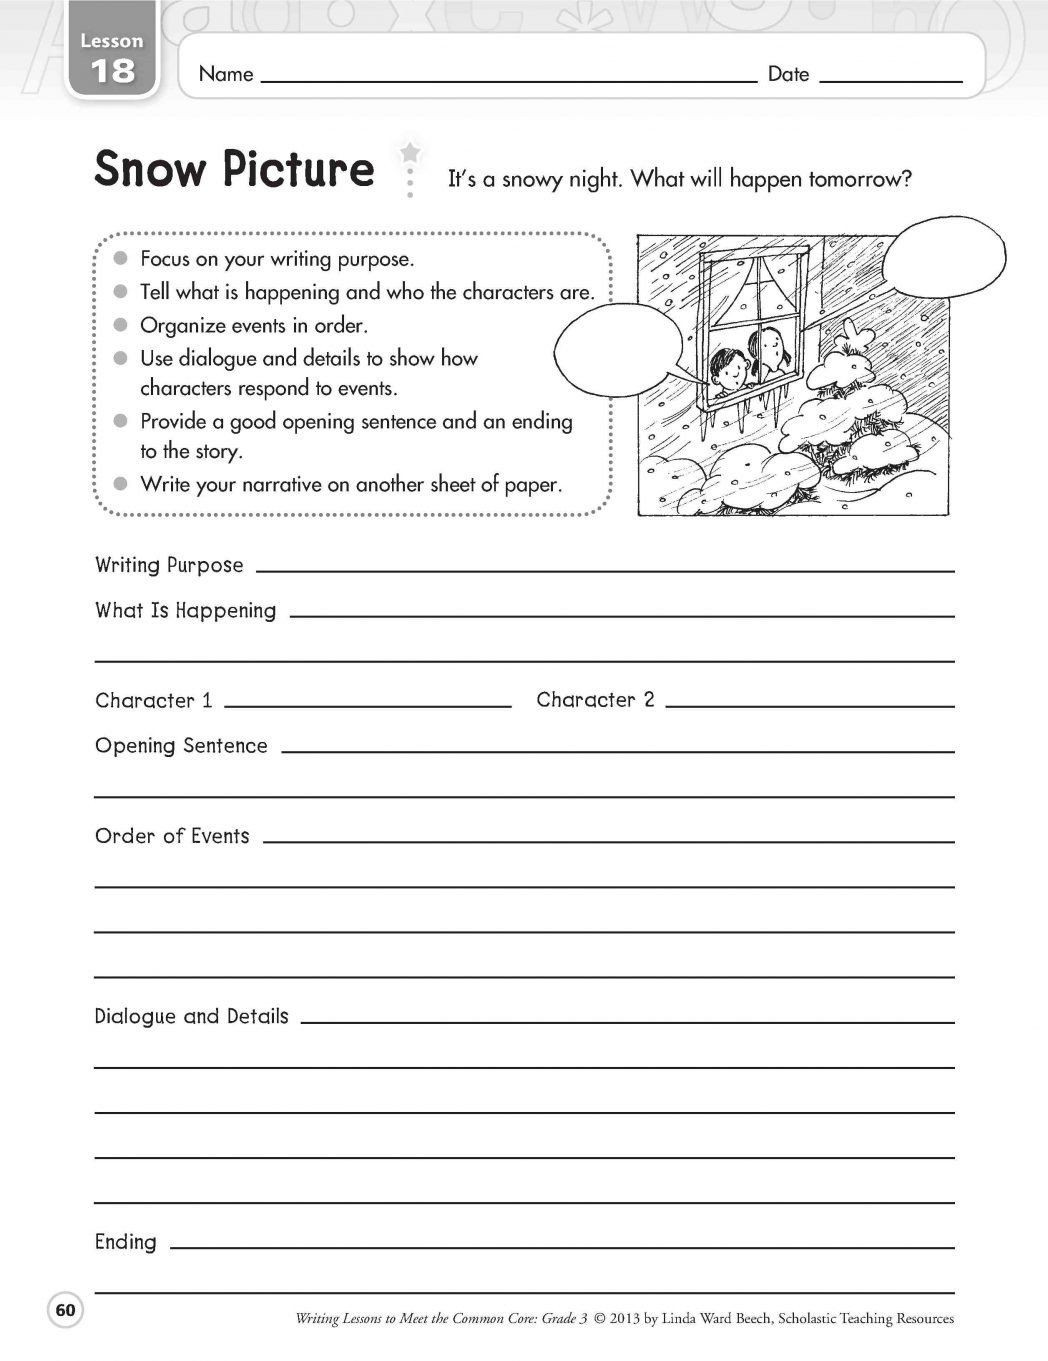 Third Grade Writing Worksheet Pin On Grade 1 Worksheets Free Printable